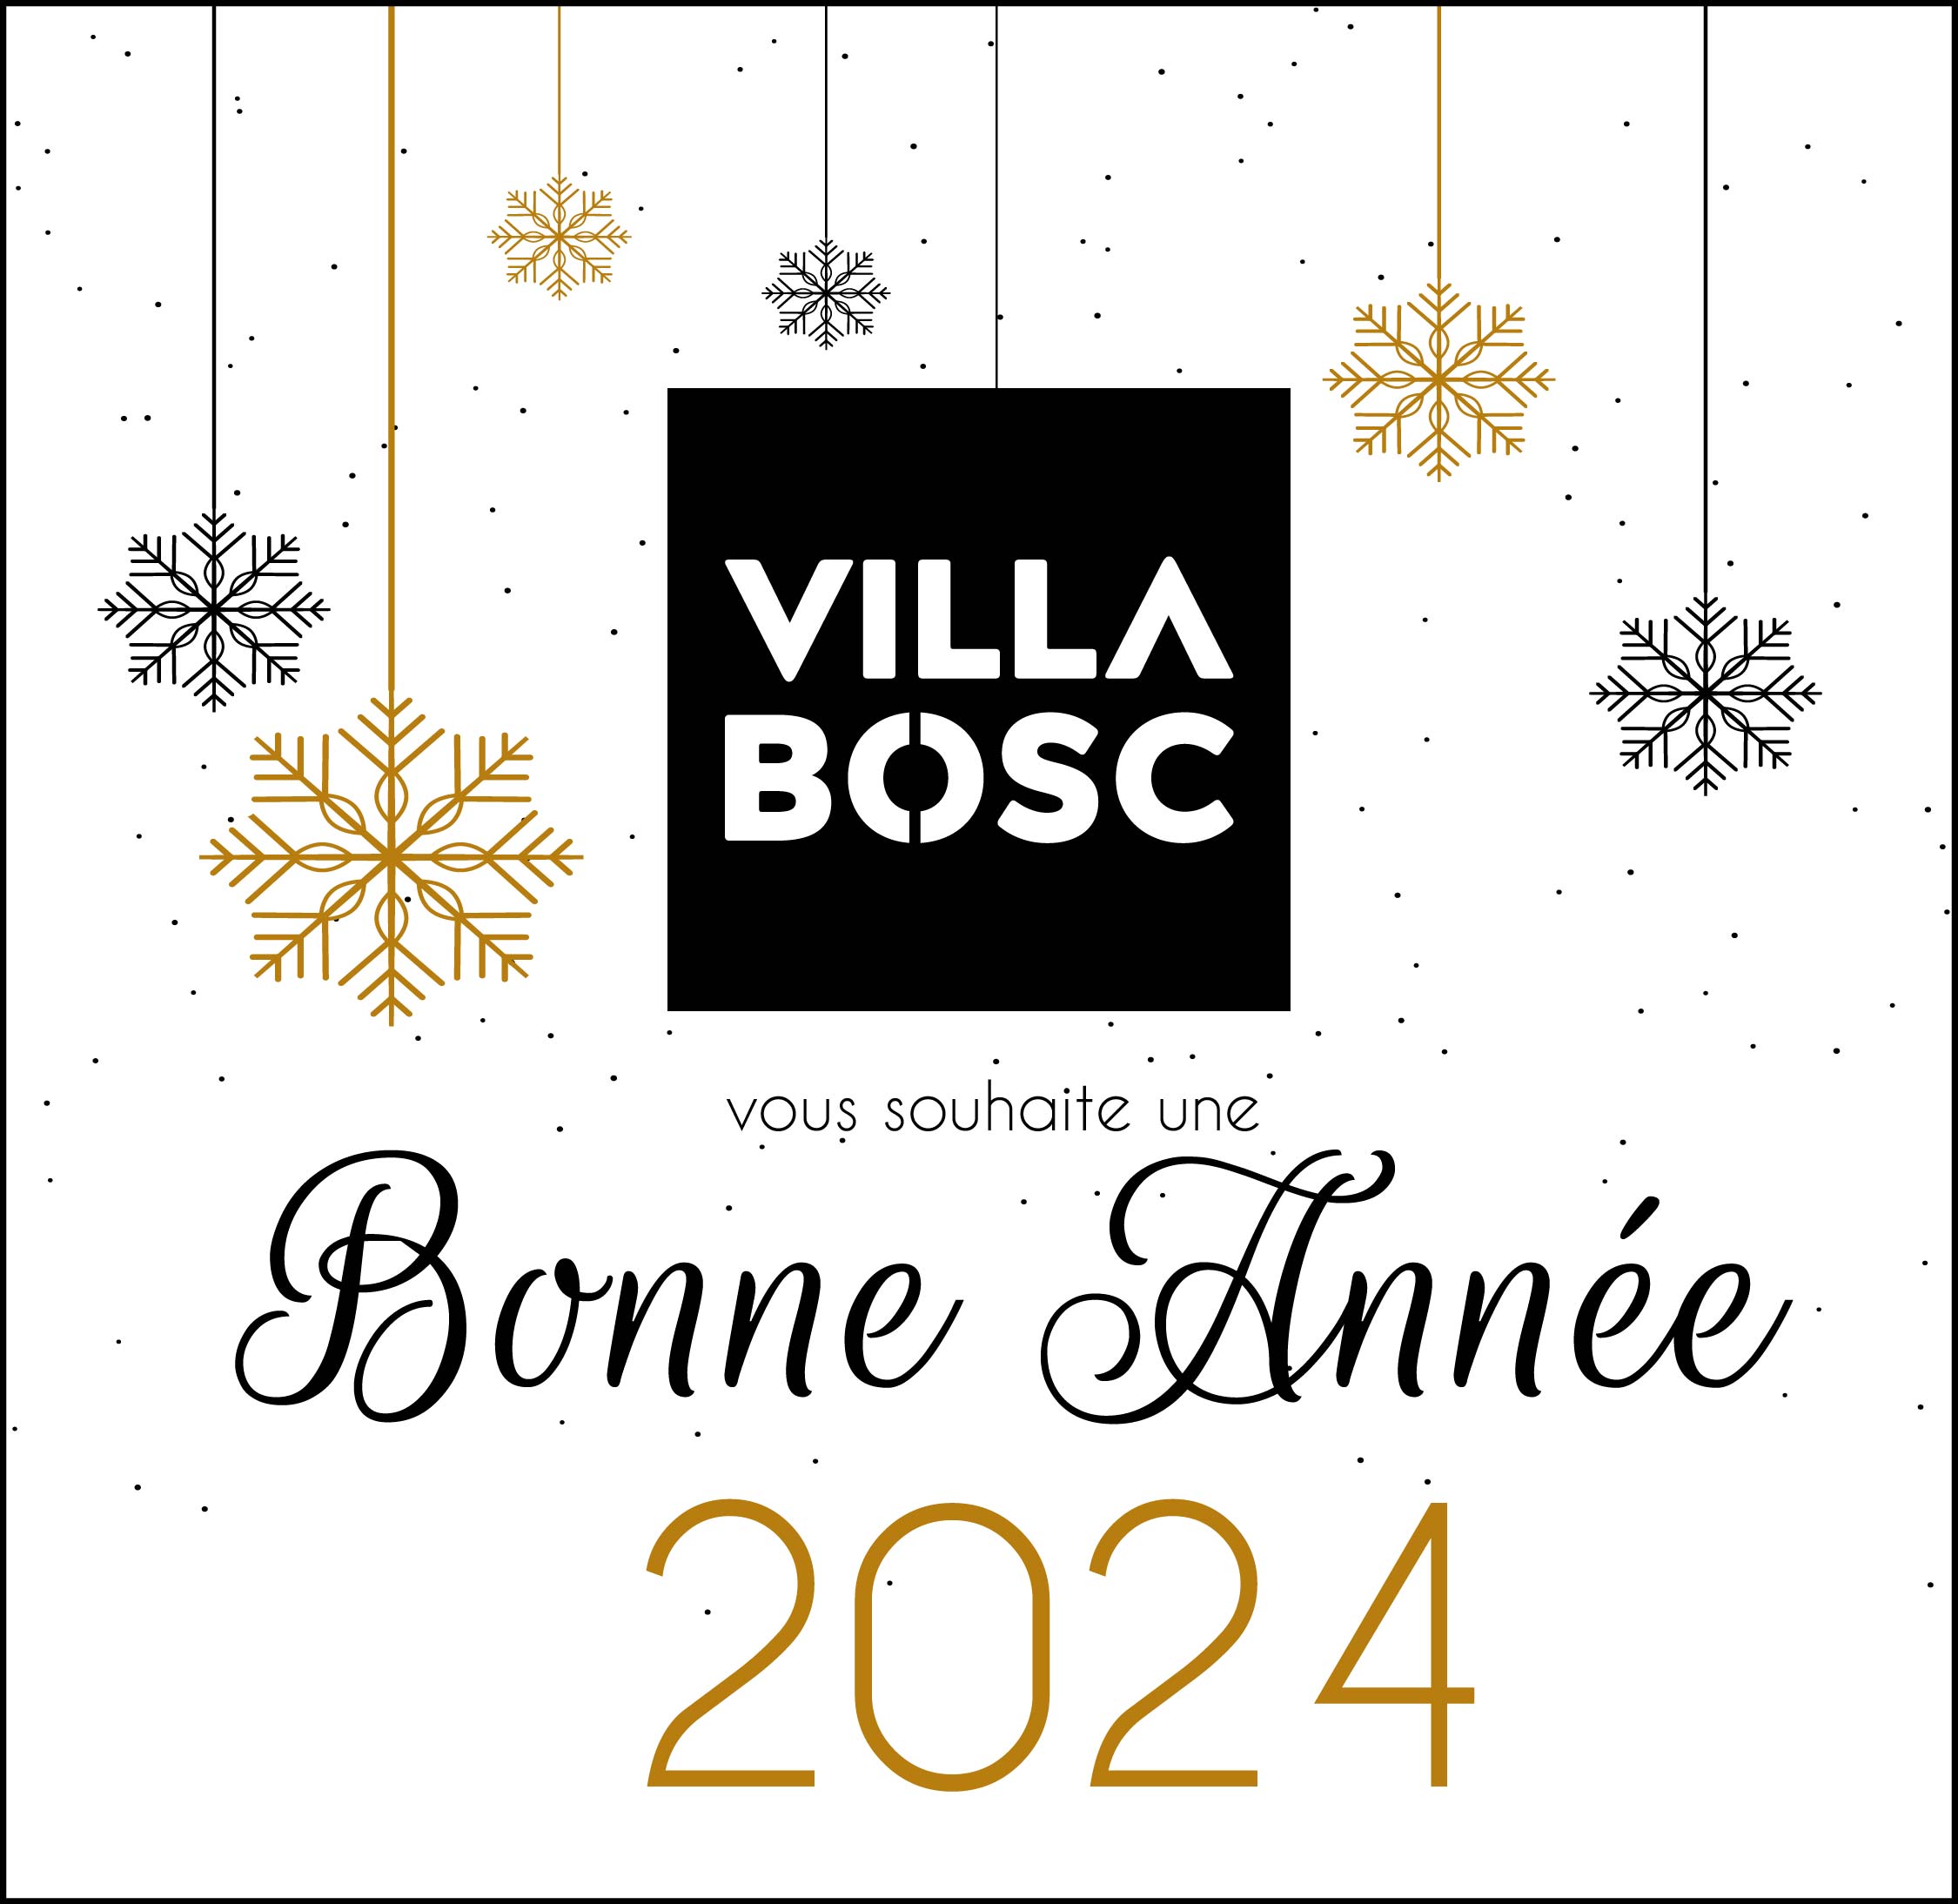 VILLA-BOSC-BONNE-ANNEE-2024